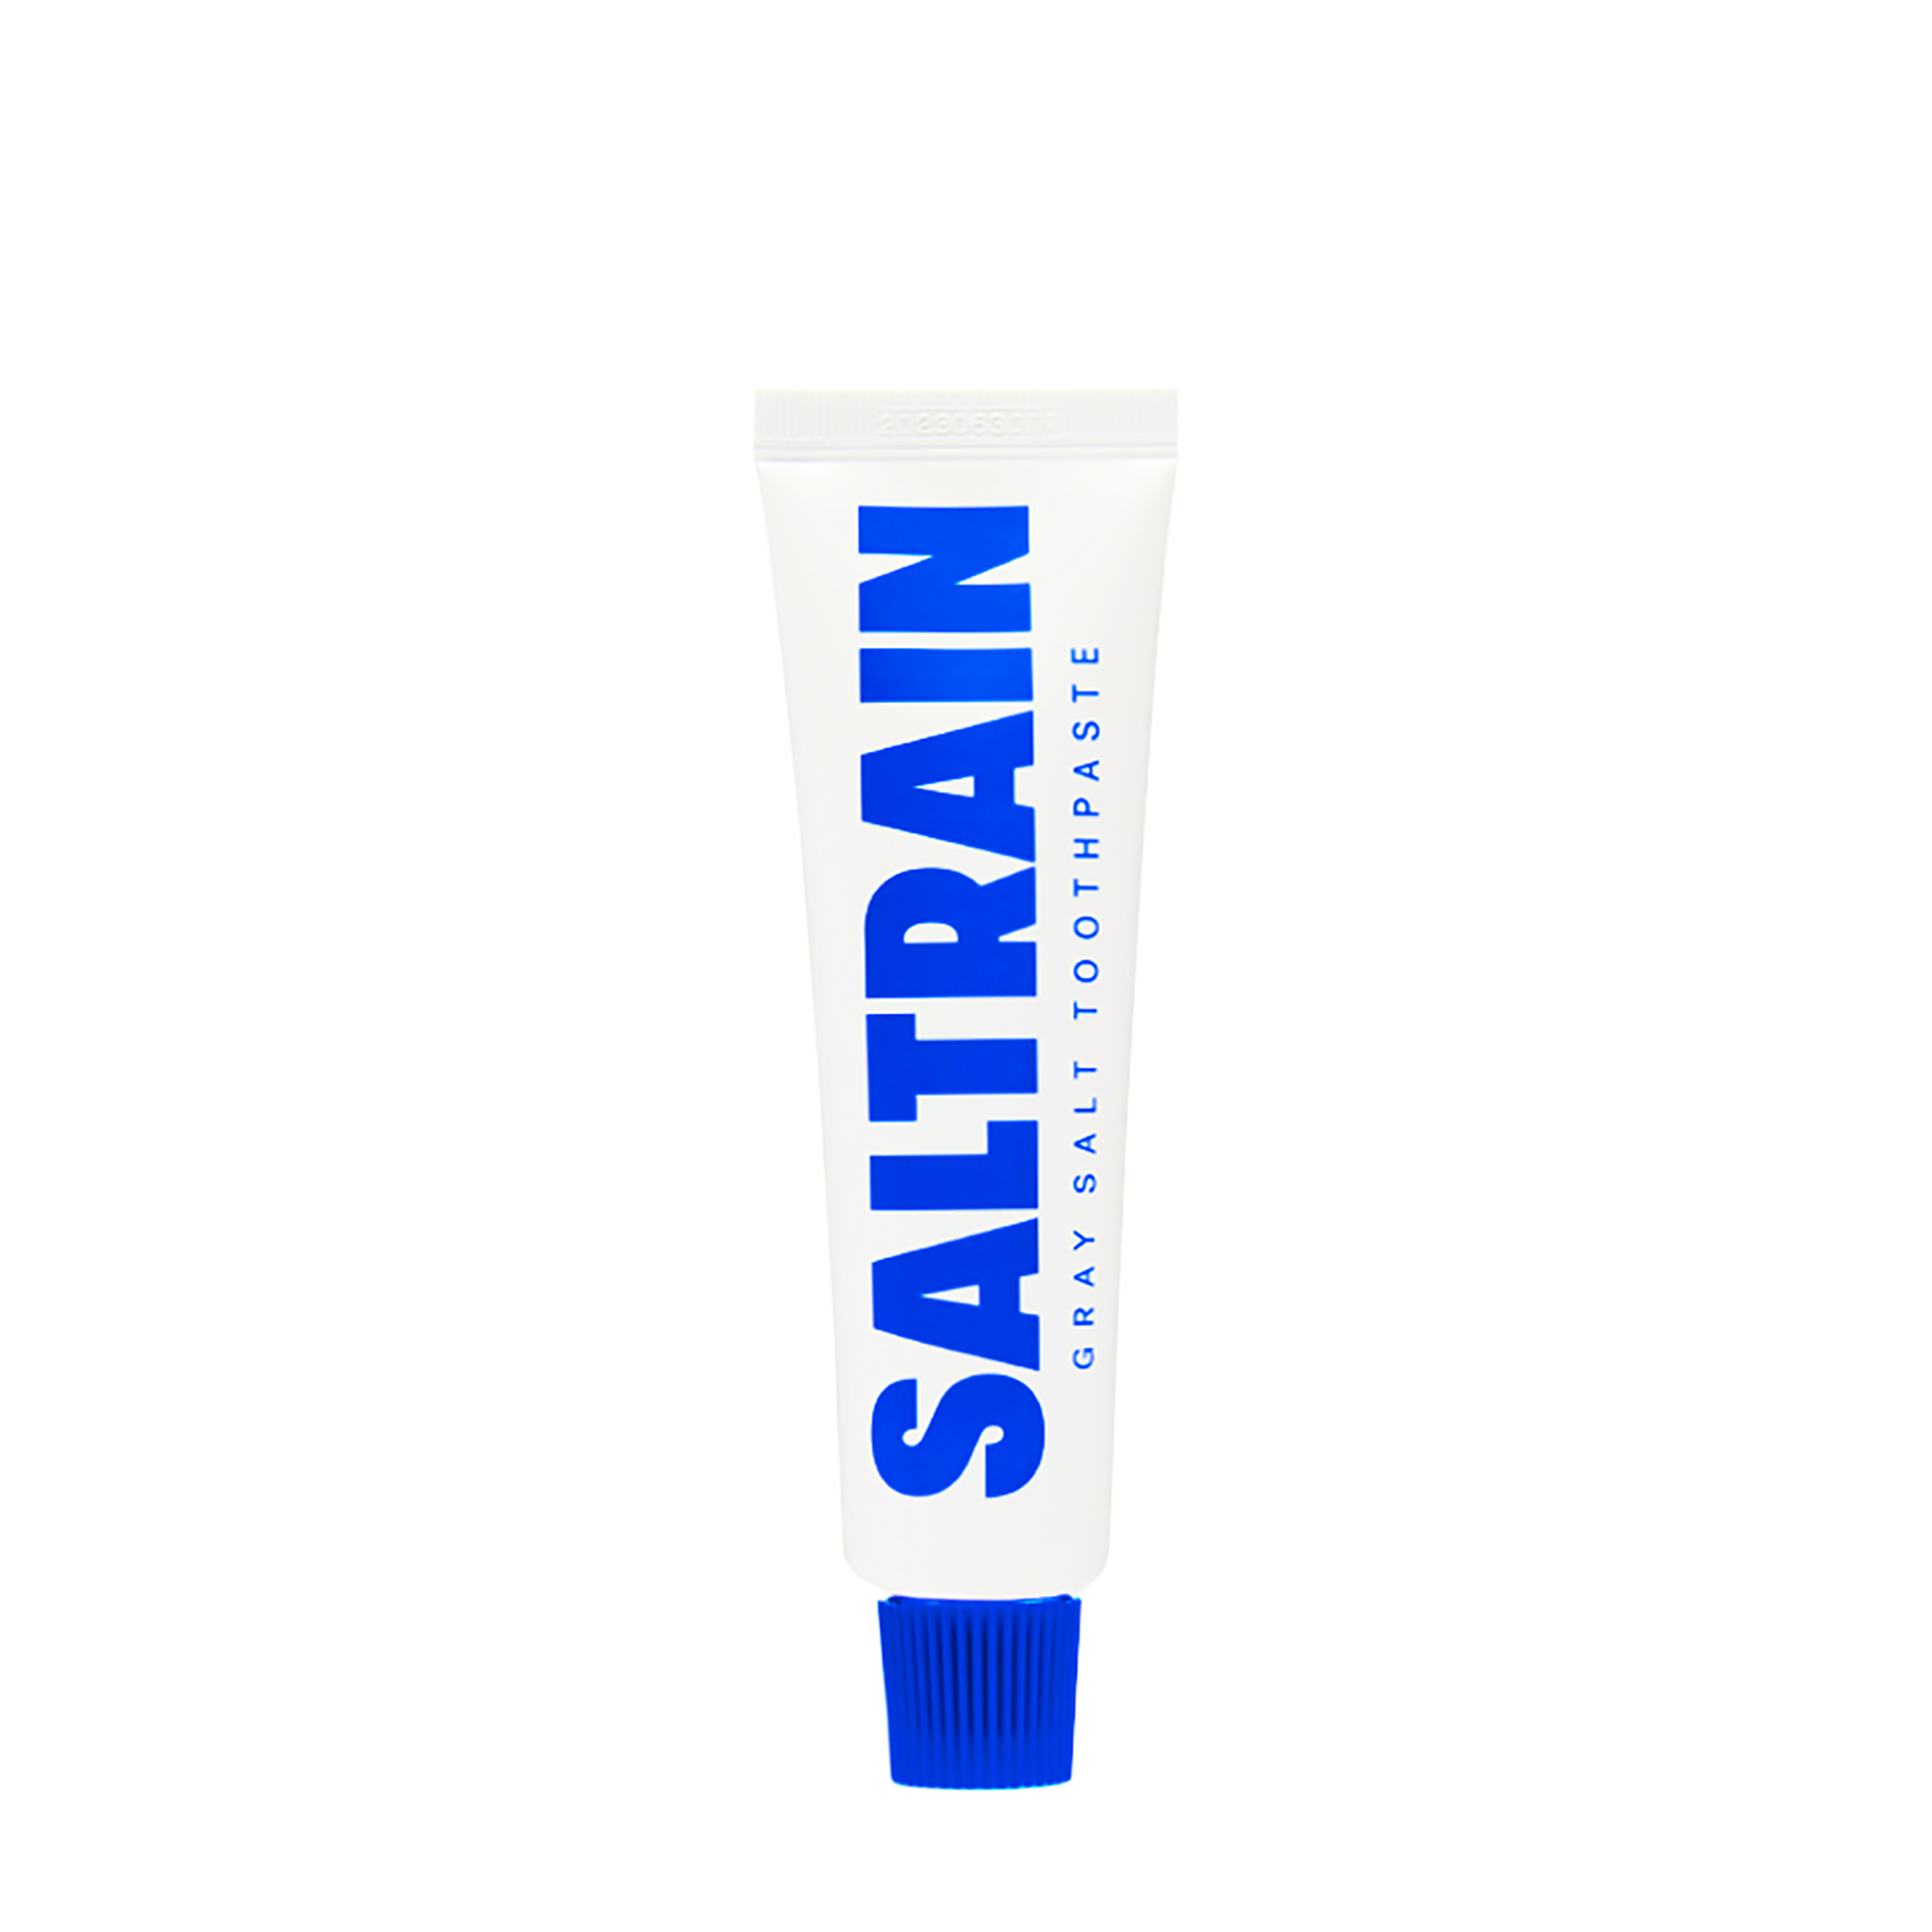 SALTRAIN SALTRAIN Мини-зубная паста 30 гр